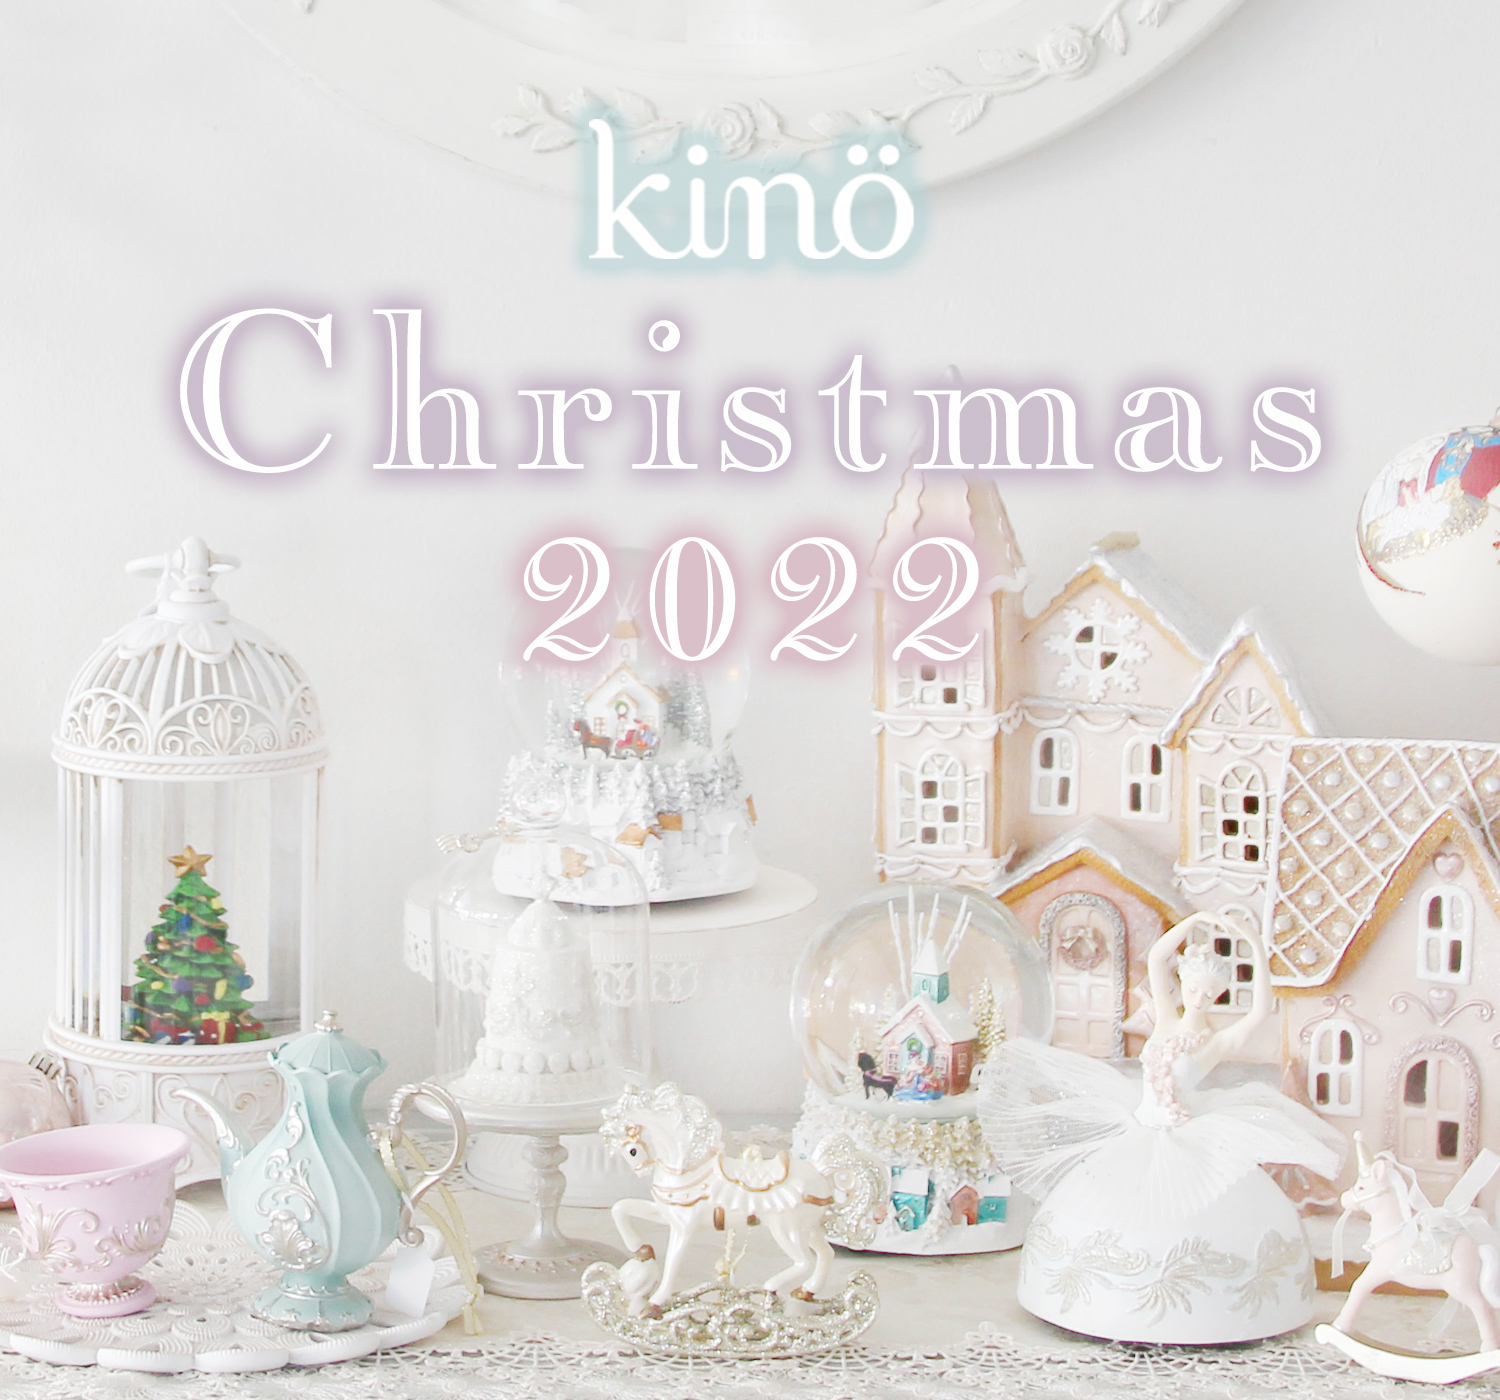 kino Christmas 2022